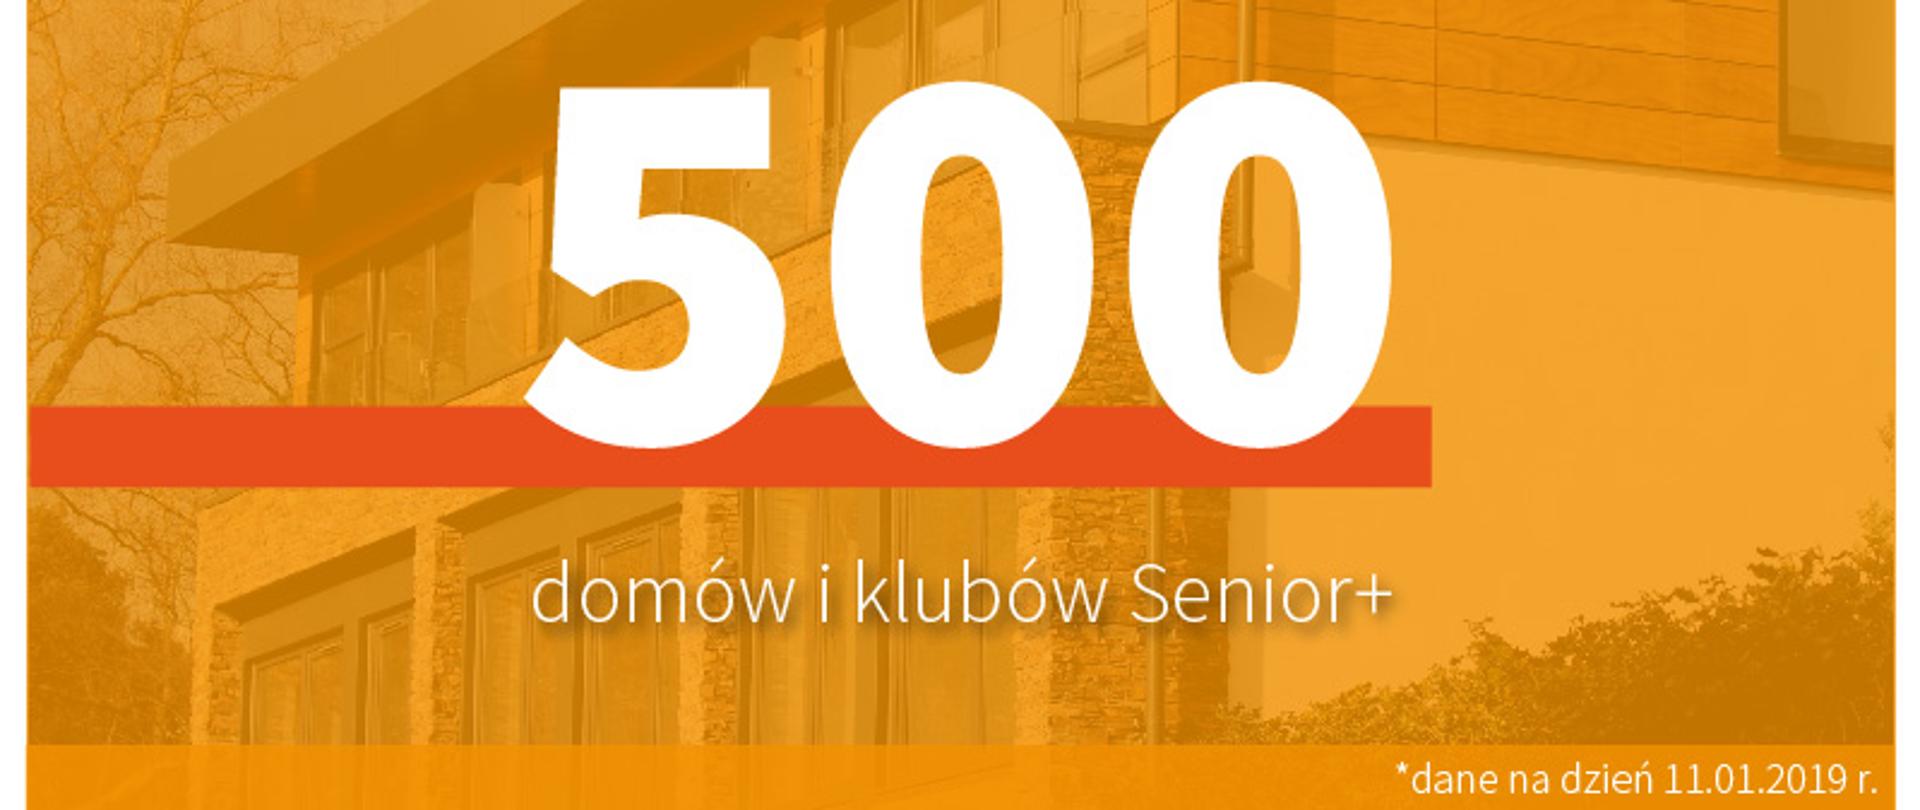 500 domów i klubów Senior+ 